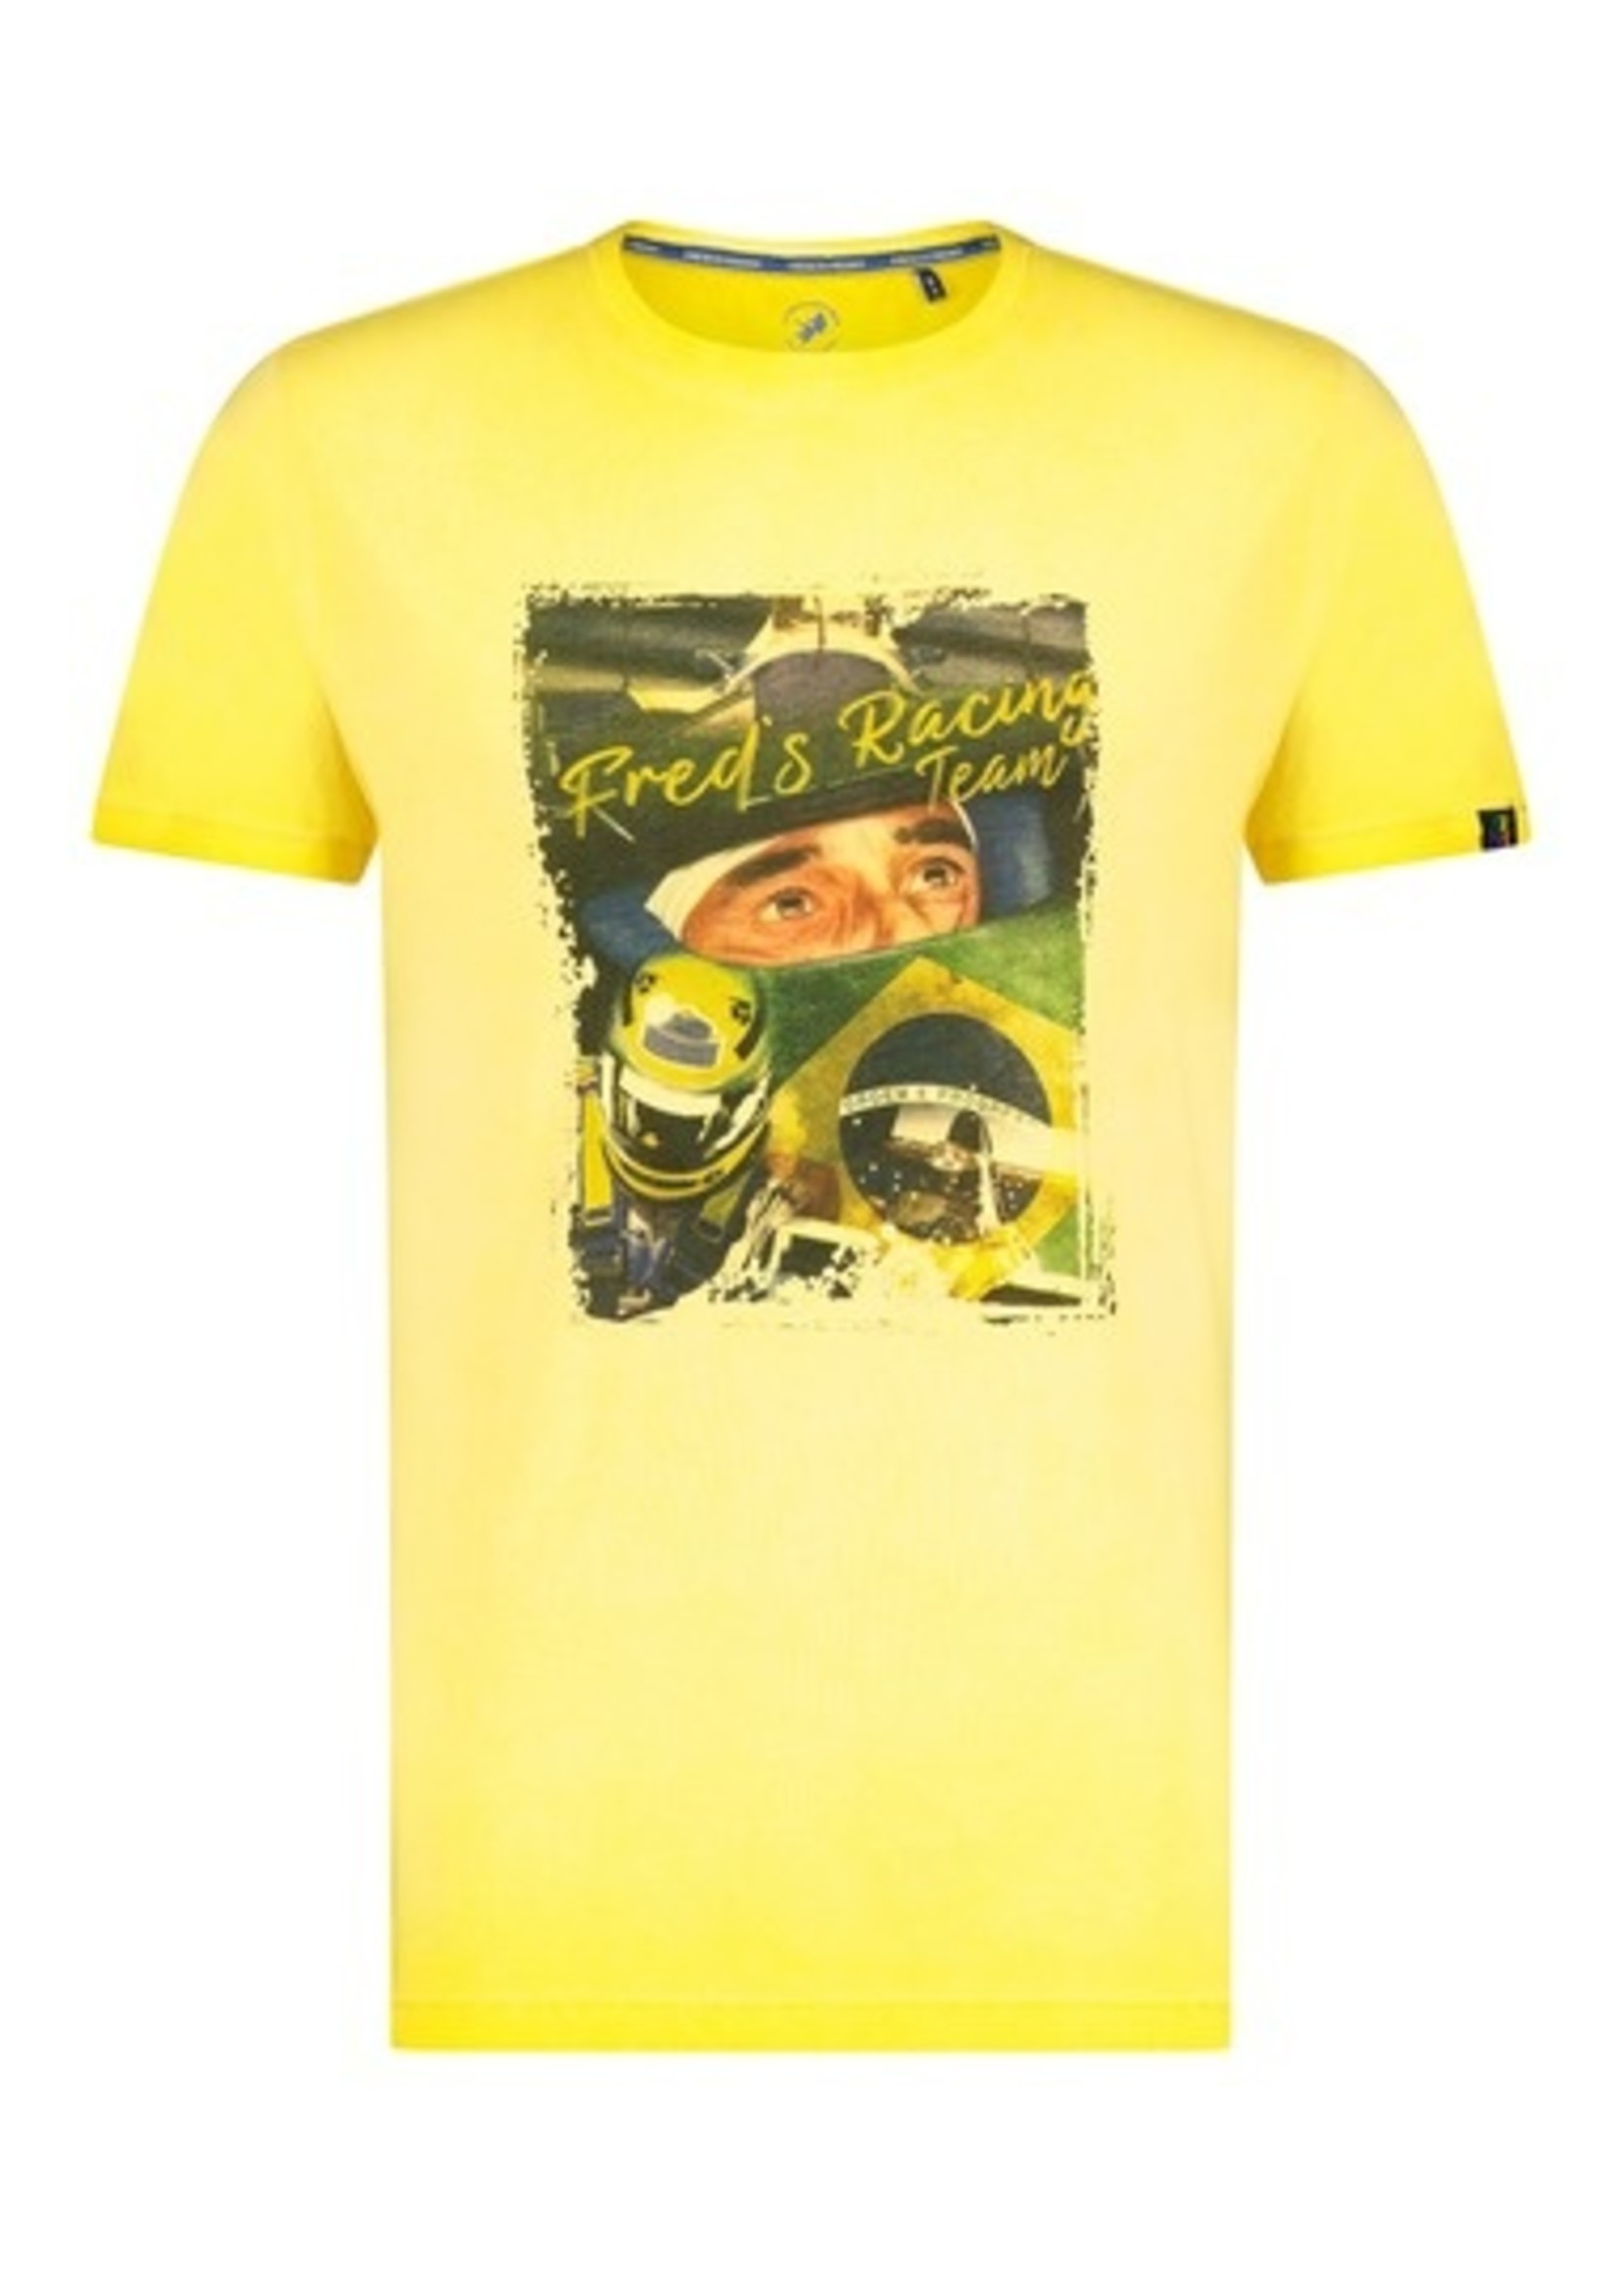 Men's T-shirt with yellow racing car print - Lacroix espace boutique inc.